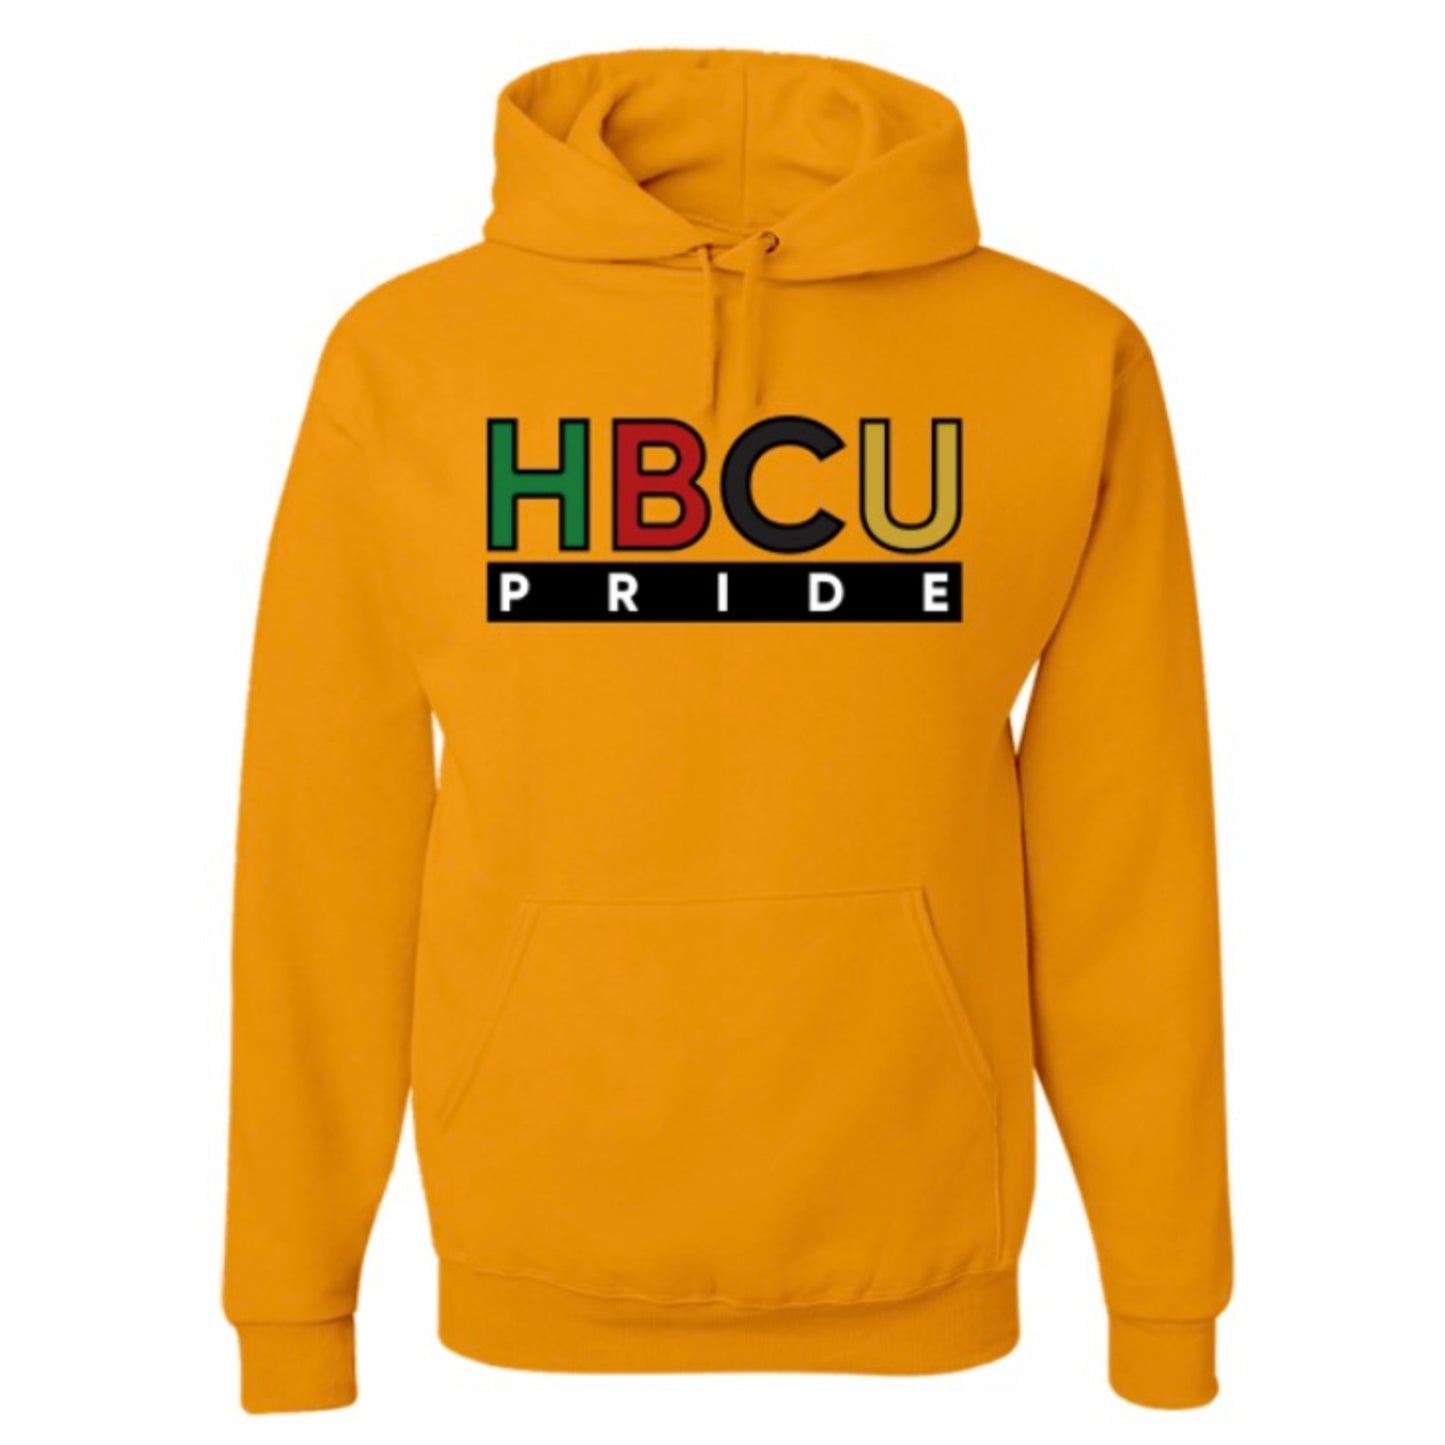 HBCU Pride Hoodie in Gold